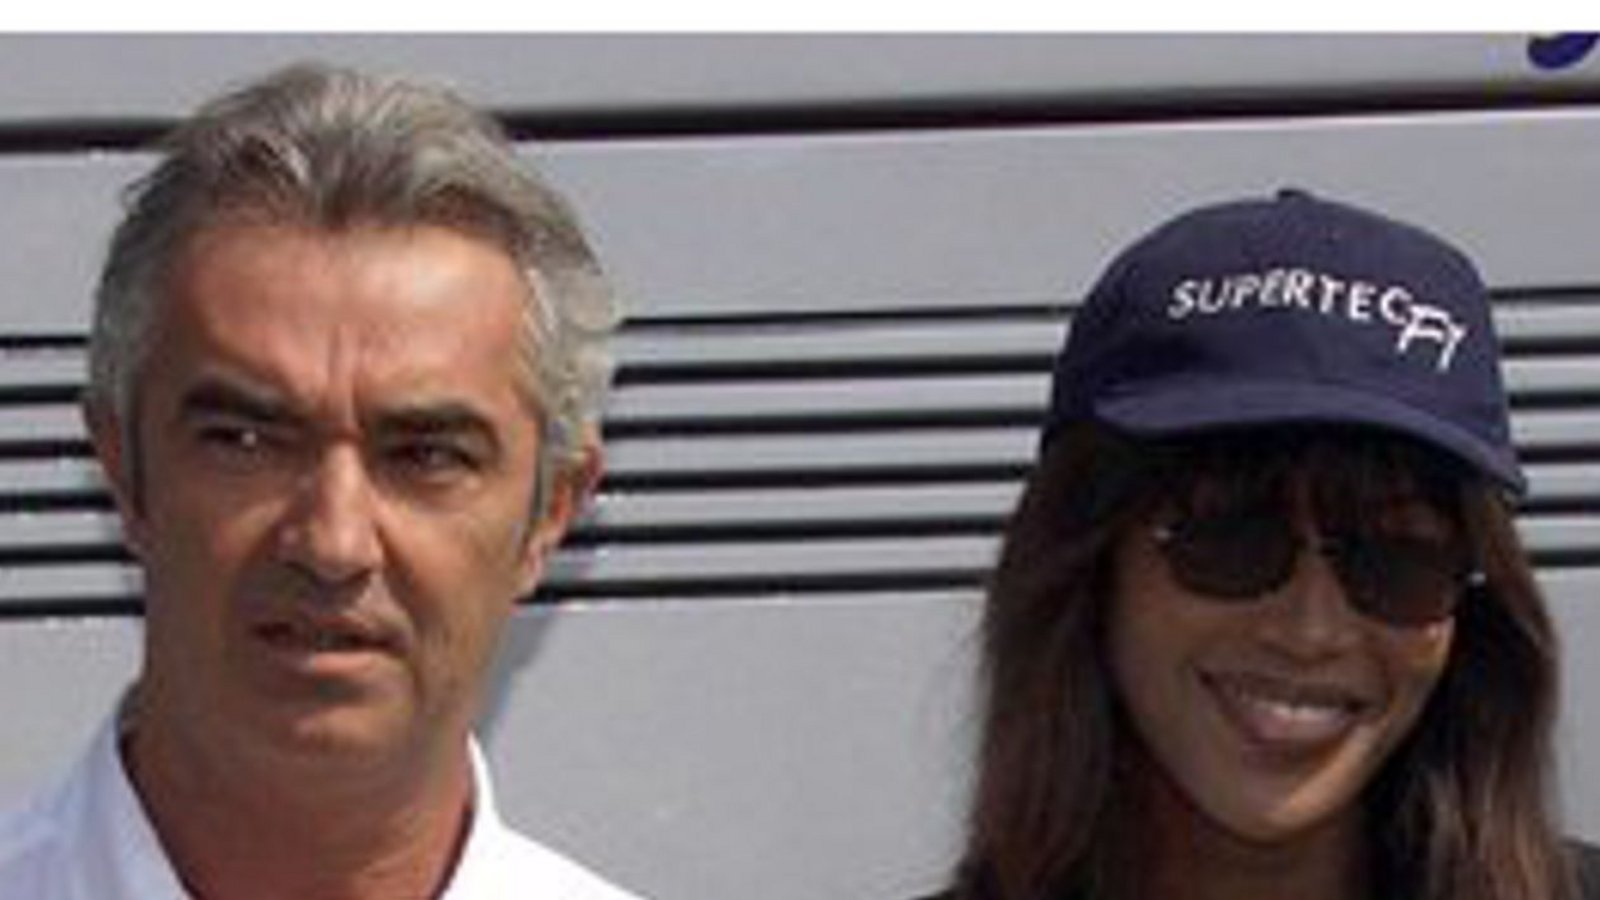 Trotz zahlreicher Beziehungen und Affären, unter anderem zu dem ehemaligen Formel-Eins-Manager Flavio Briatore (Bild), ist Naomi Campbell bis heute unverheiratet und kinderlos geblieben. Auf dem Arm hat sie die Initialen F.B. tätowiert – ein Andenken an Briatore.Foto: dpa